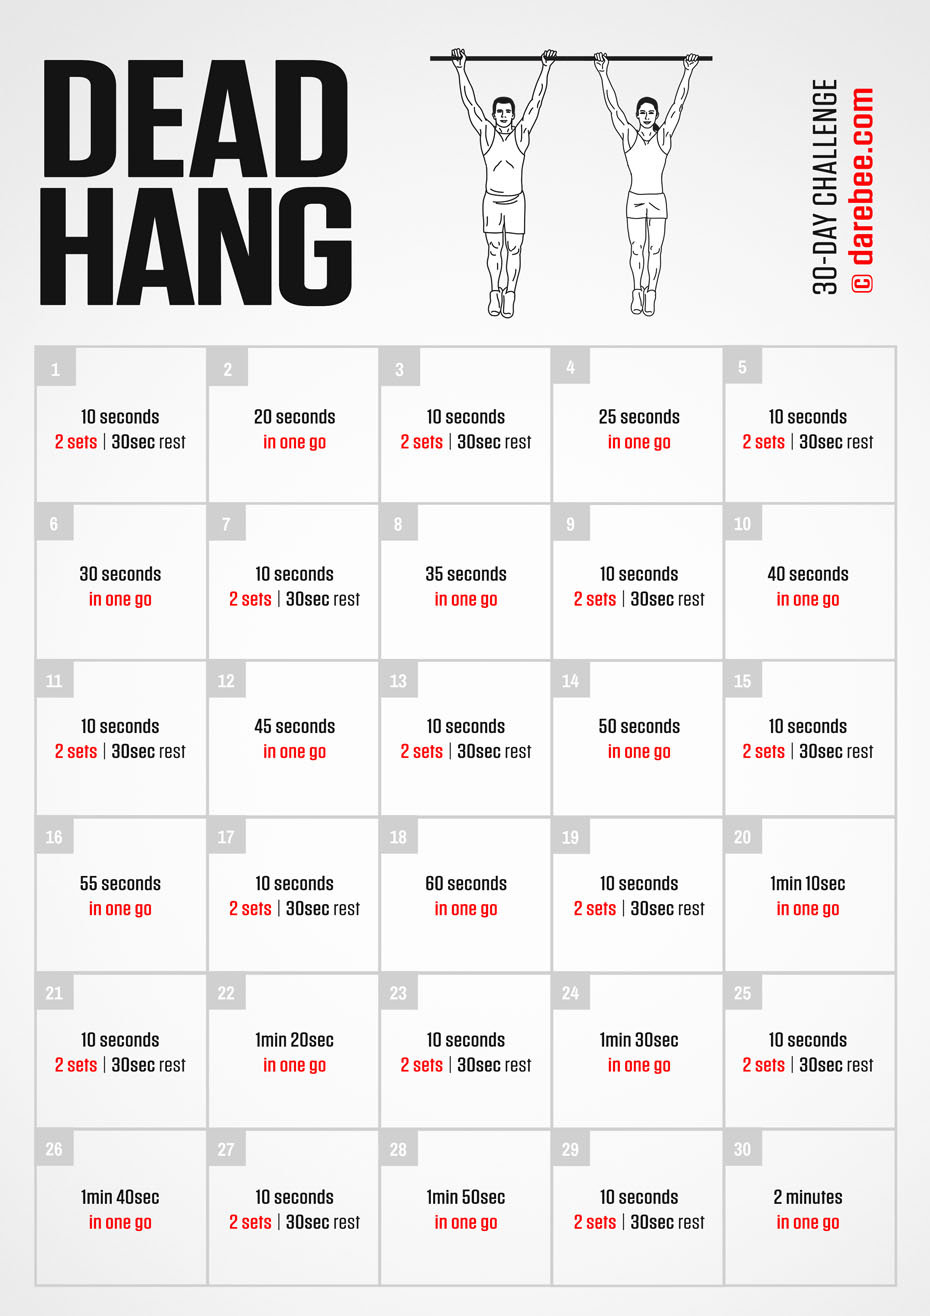 Dead Hang Challenge